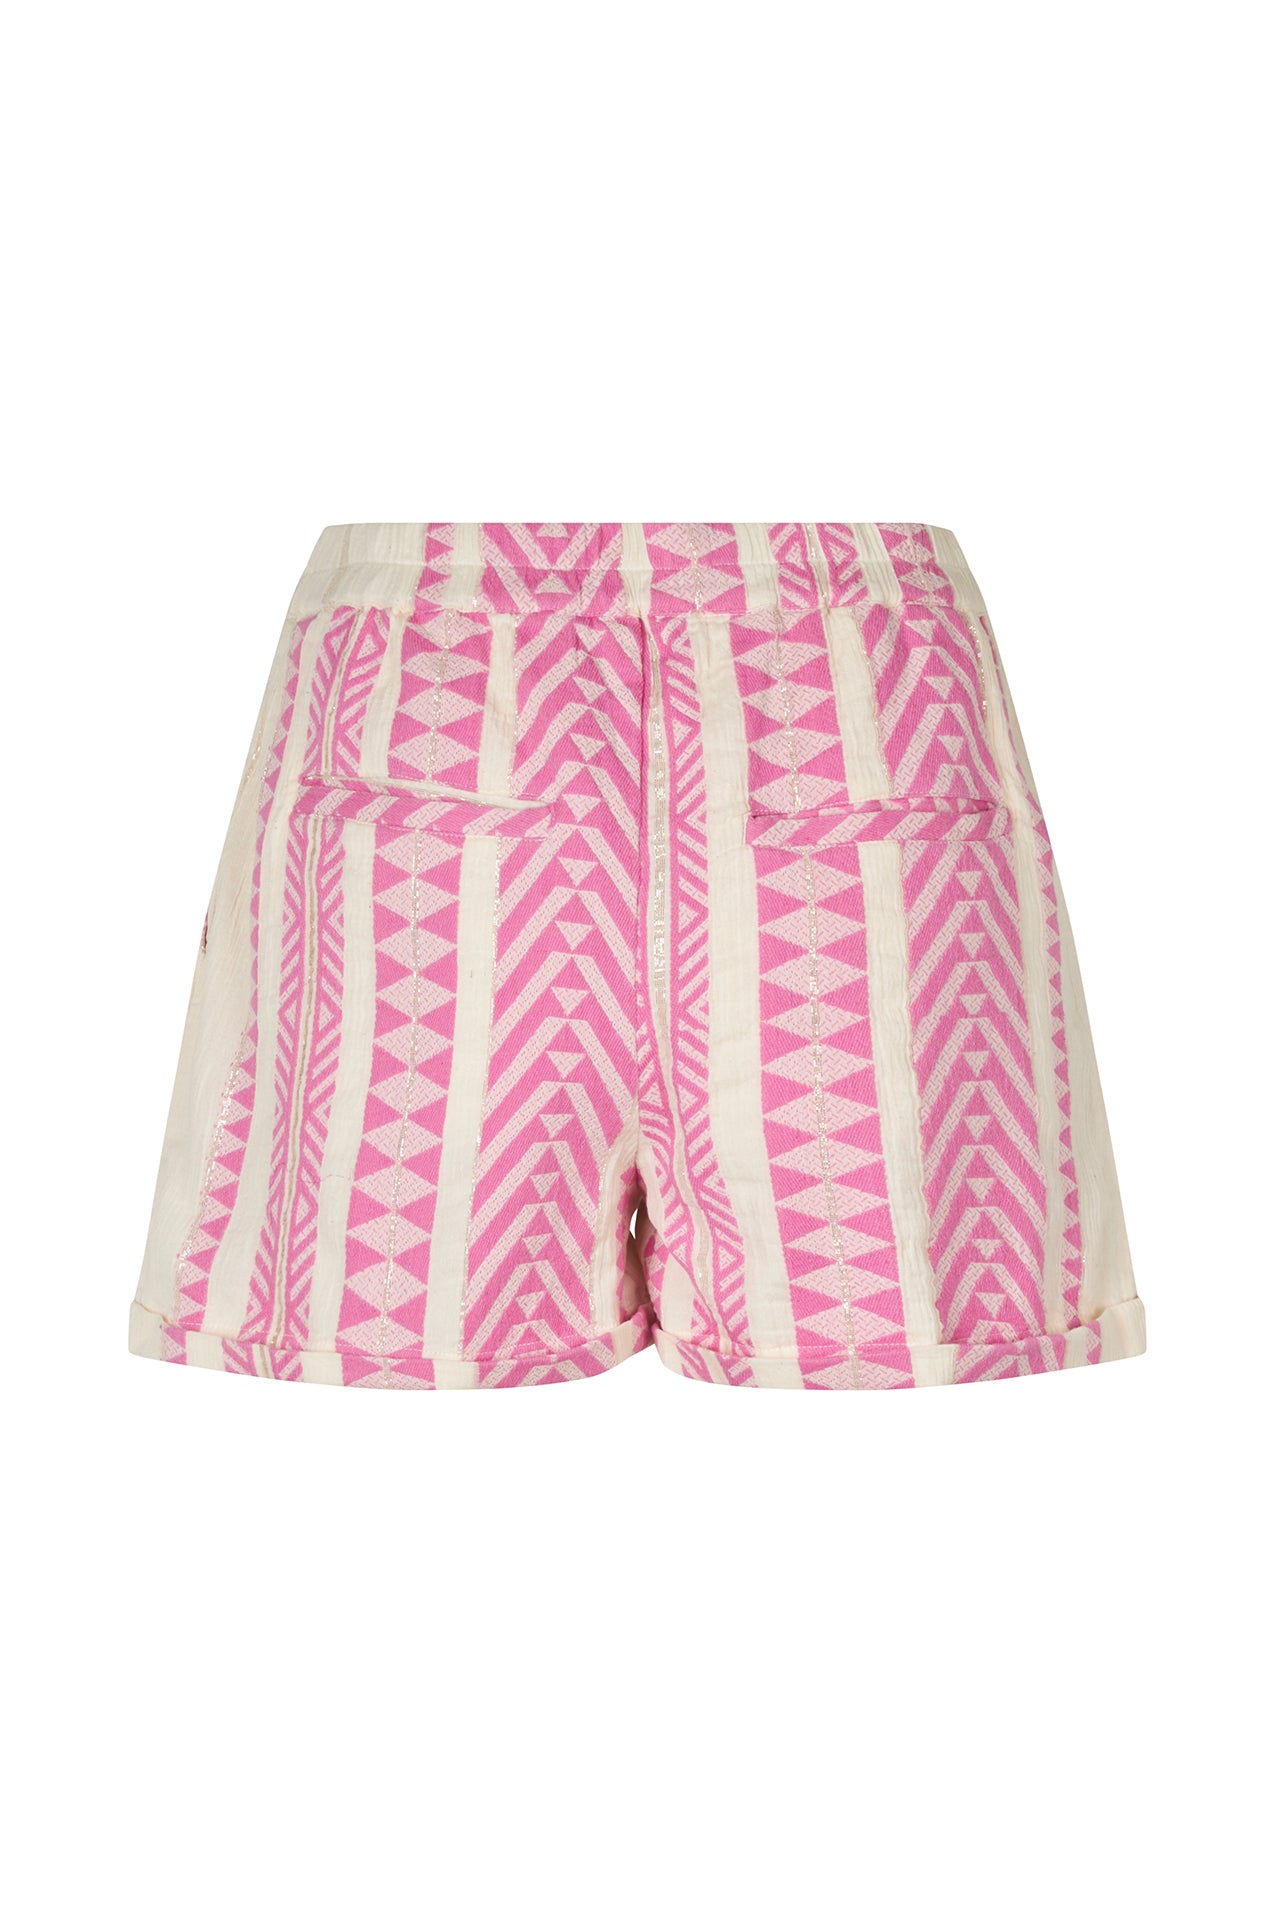 Lollys Laundry DelhiLL Shorts Shorts 51 Pink